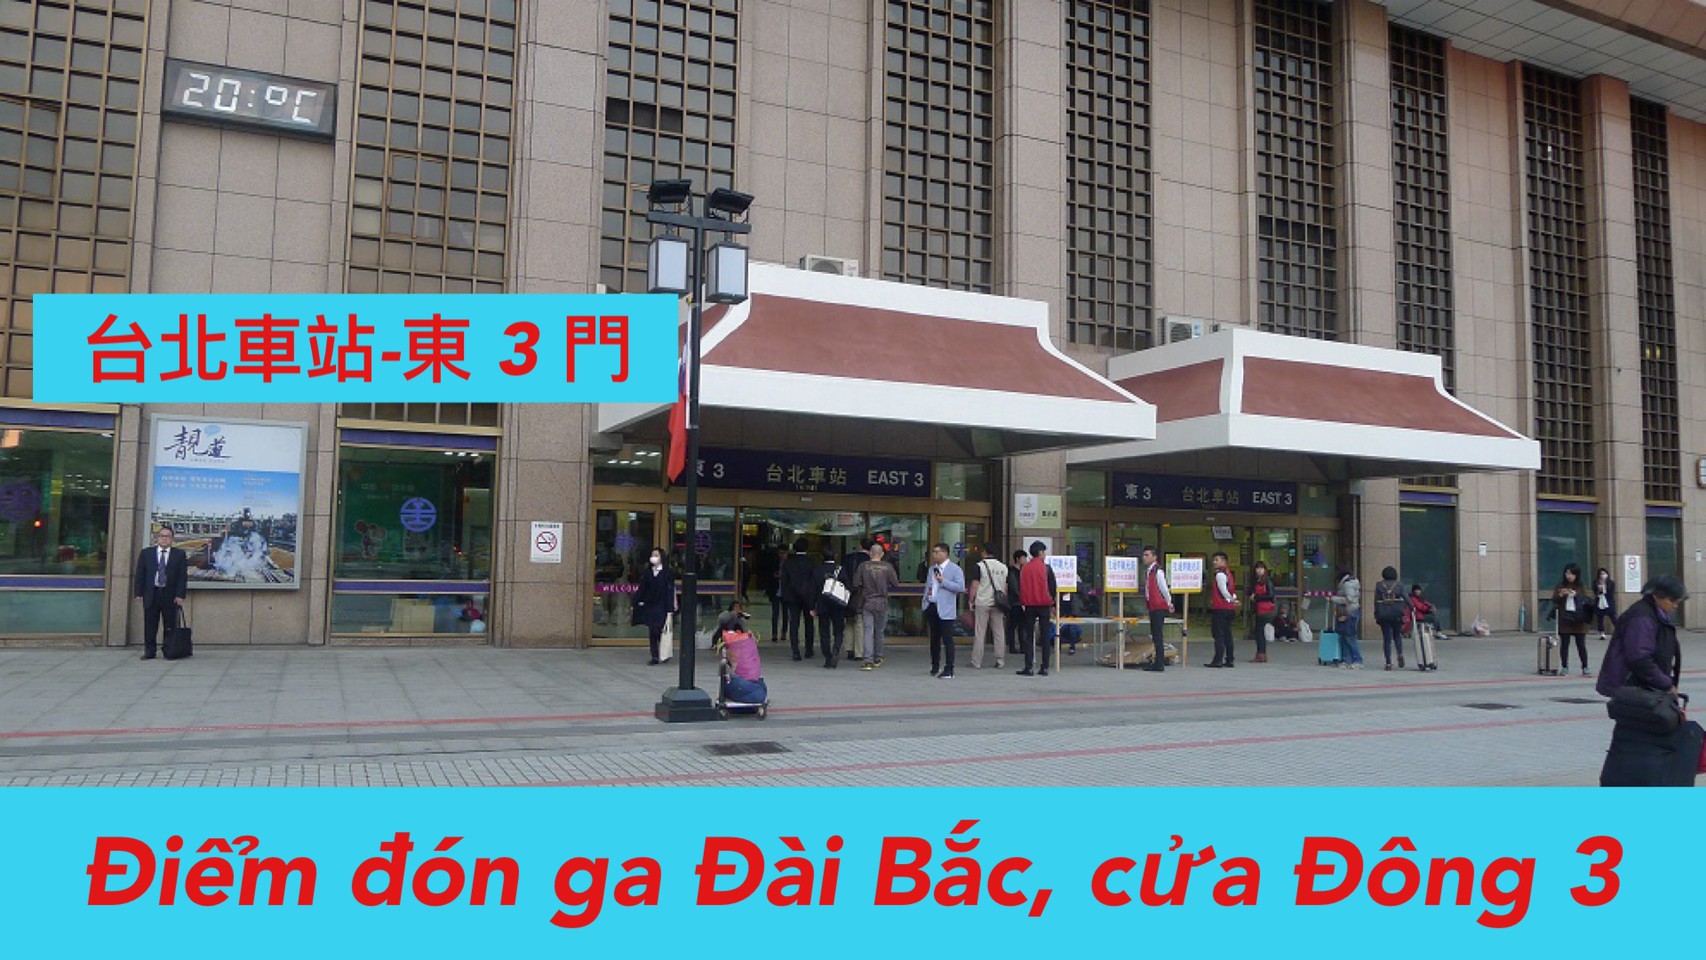  20:00 Đón ga Đài Bắc (East 3) /台北車站 